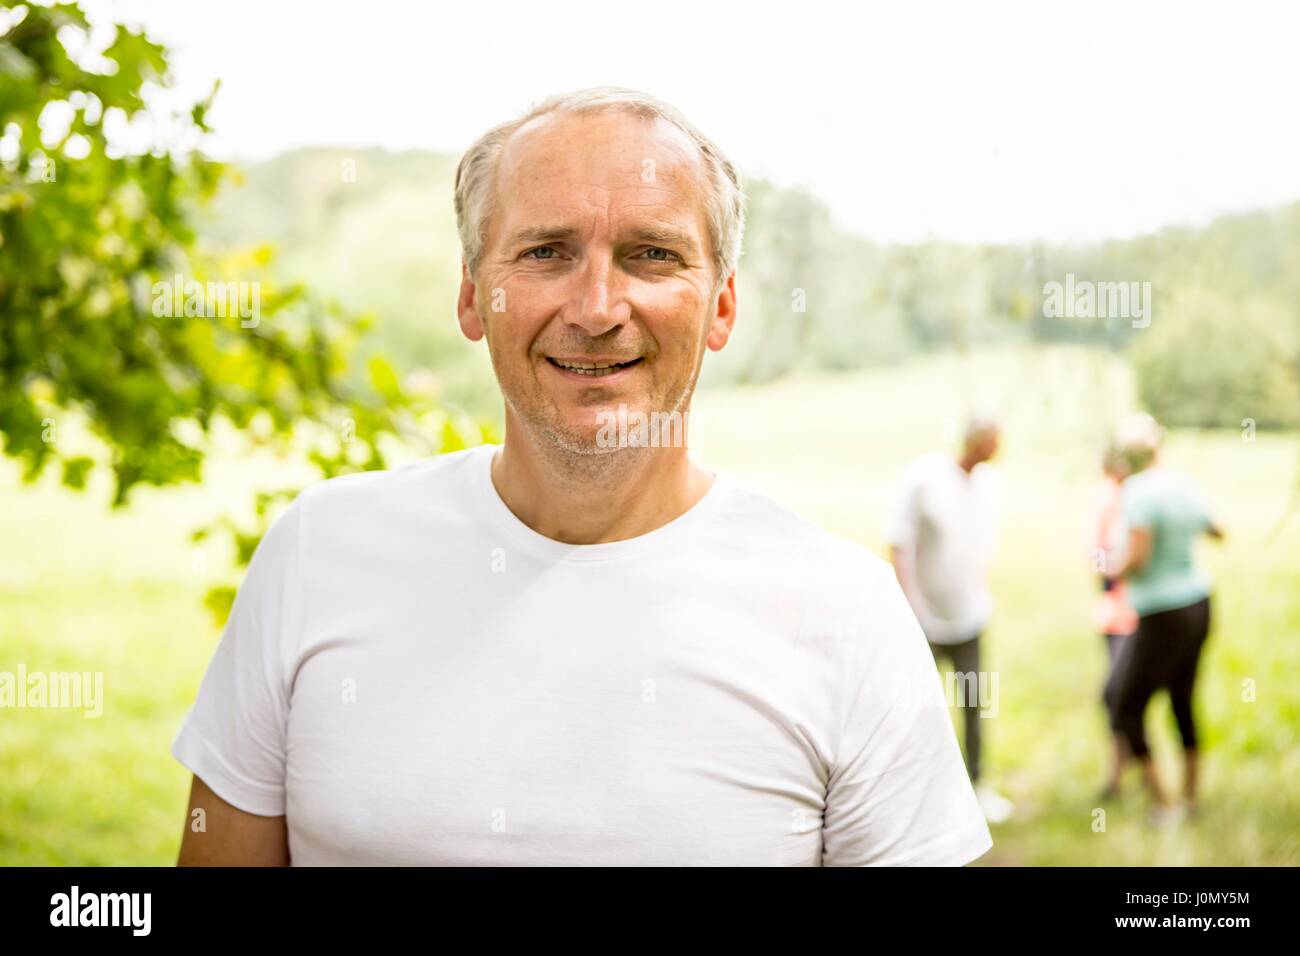 Man wearing white t-shirt sourire vers la caméra. Banque D'Images